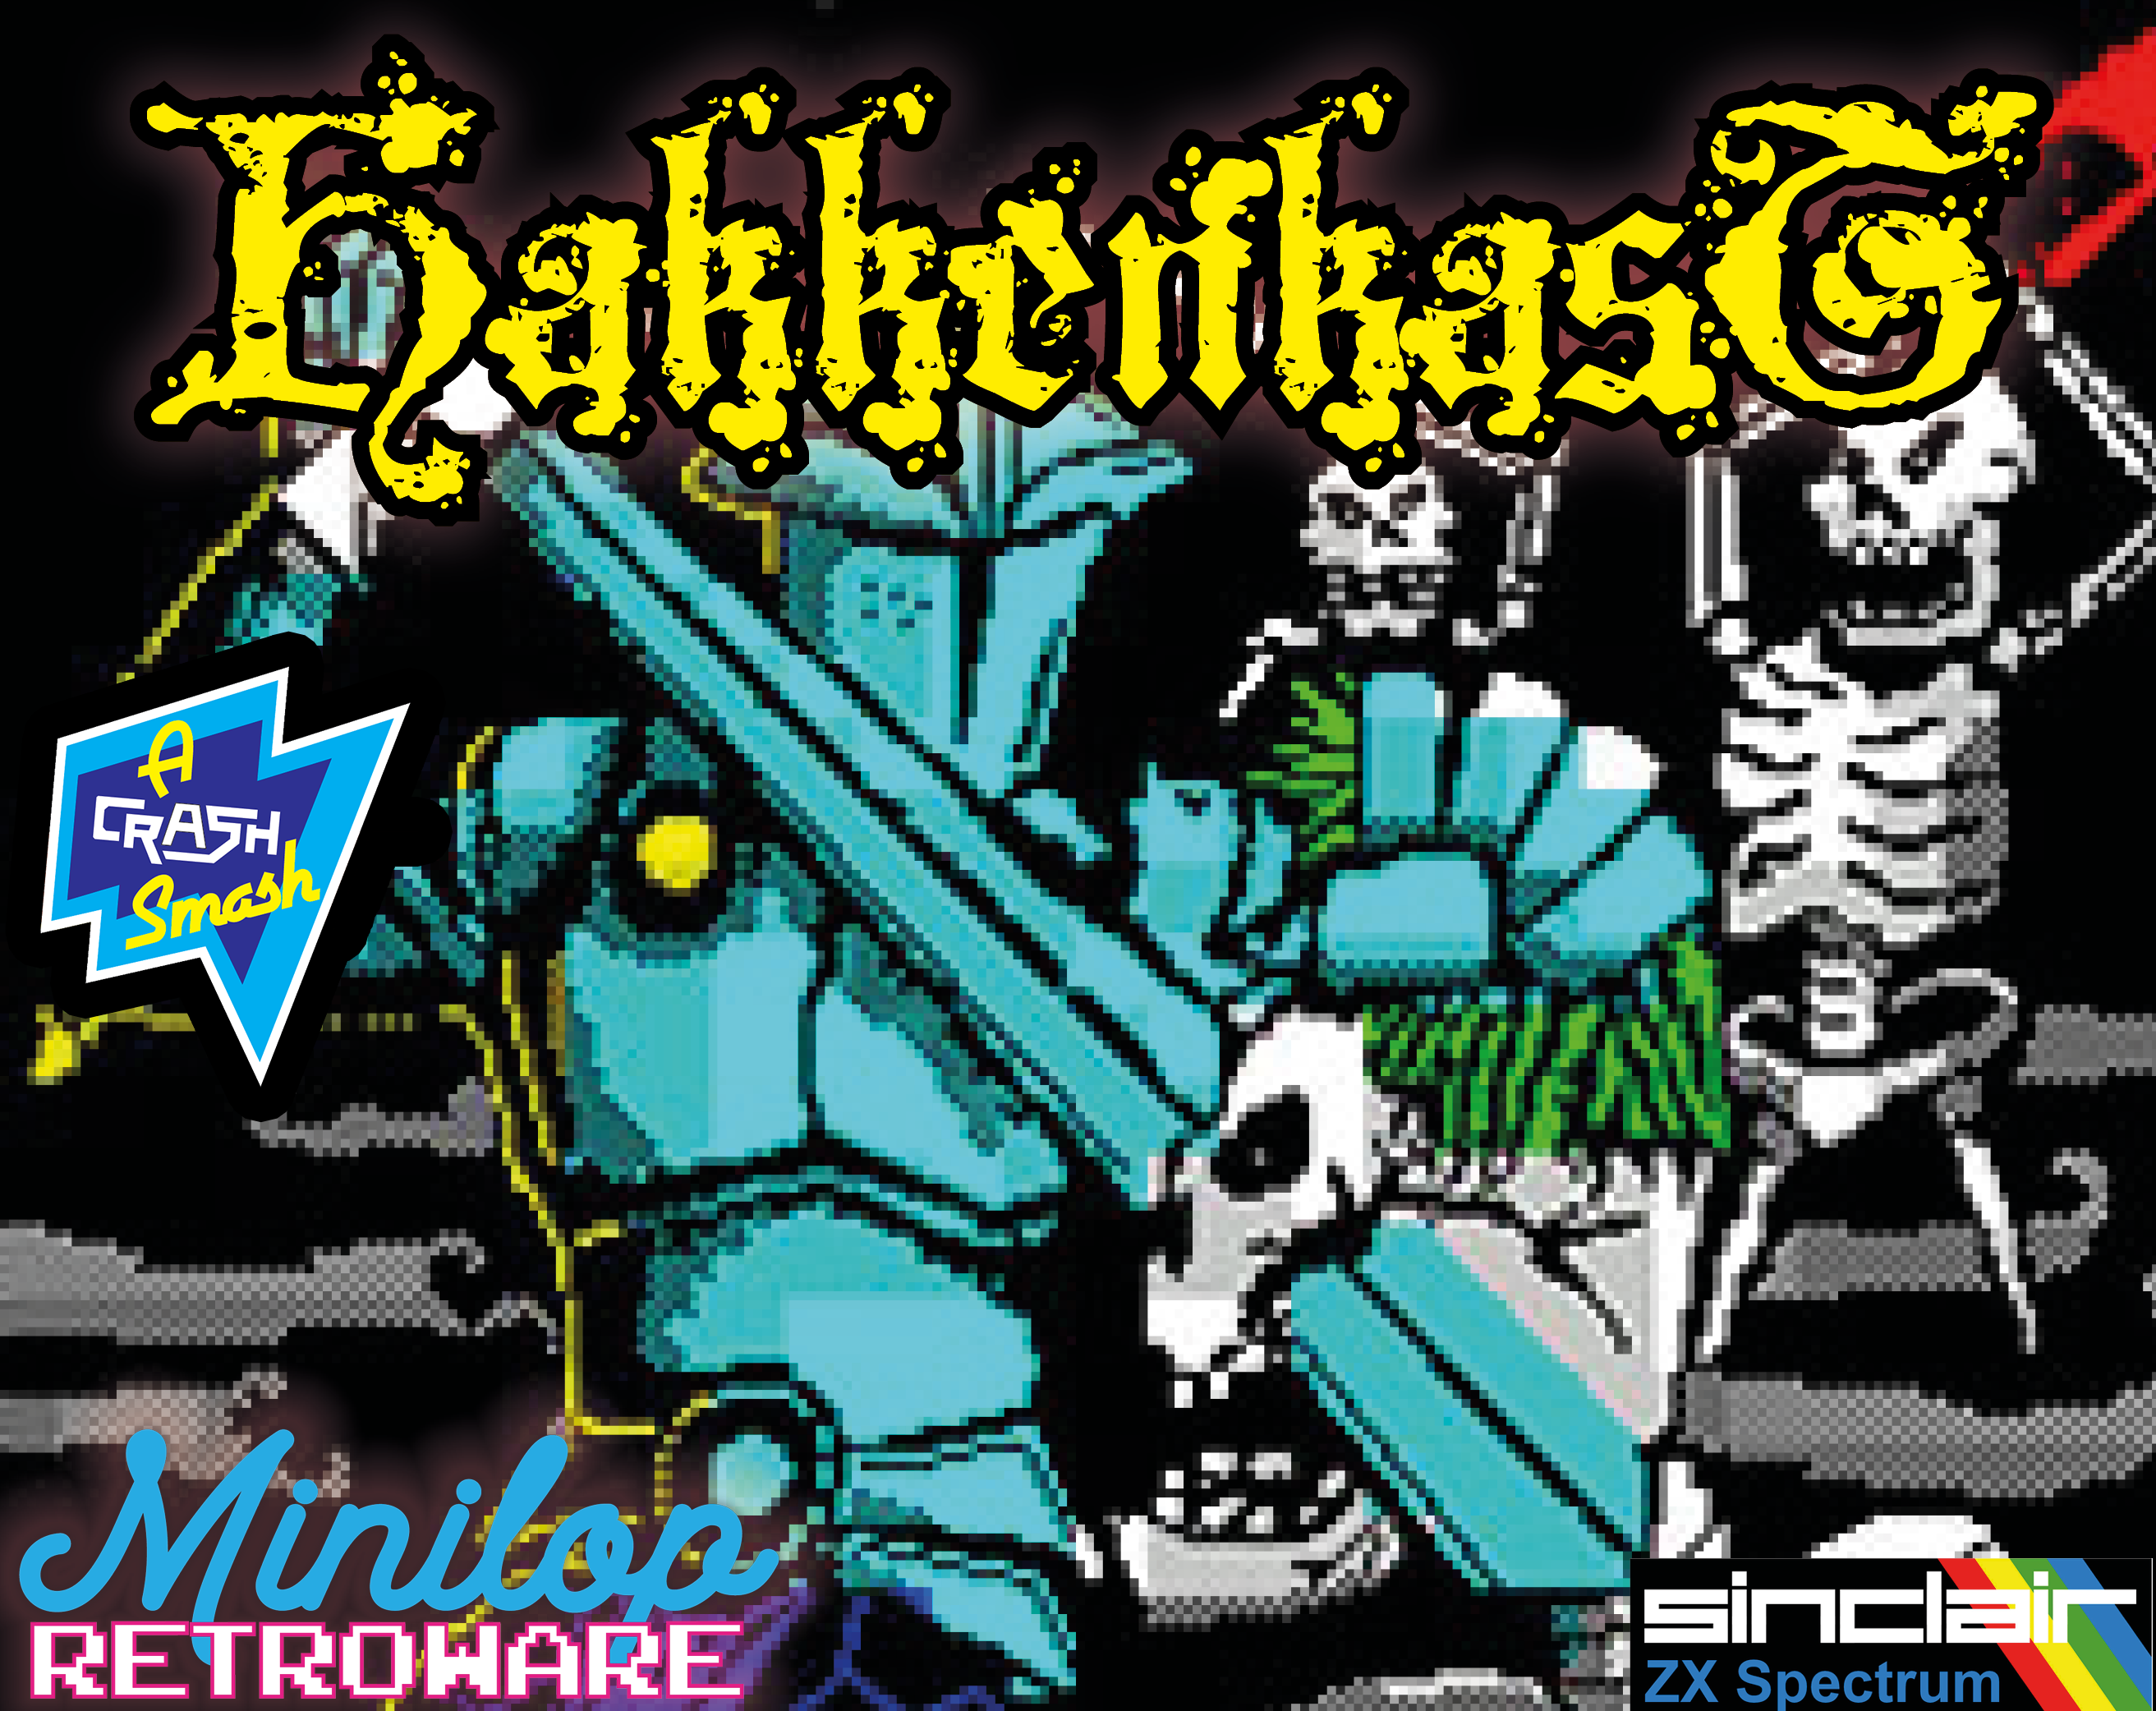 Hakkenkast (ZX Spectrum) by Minilop